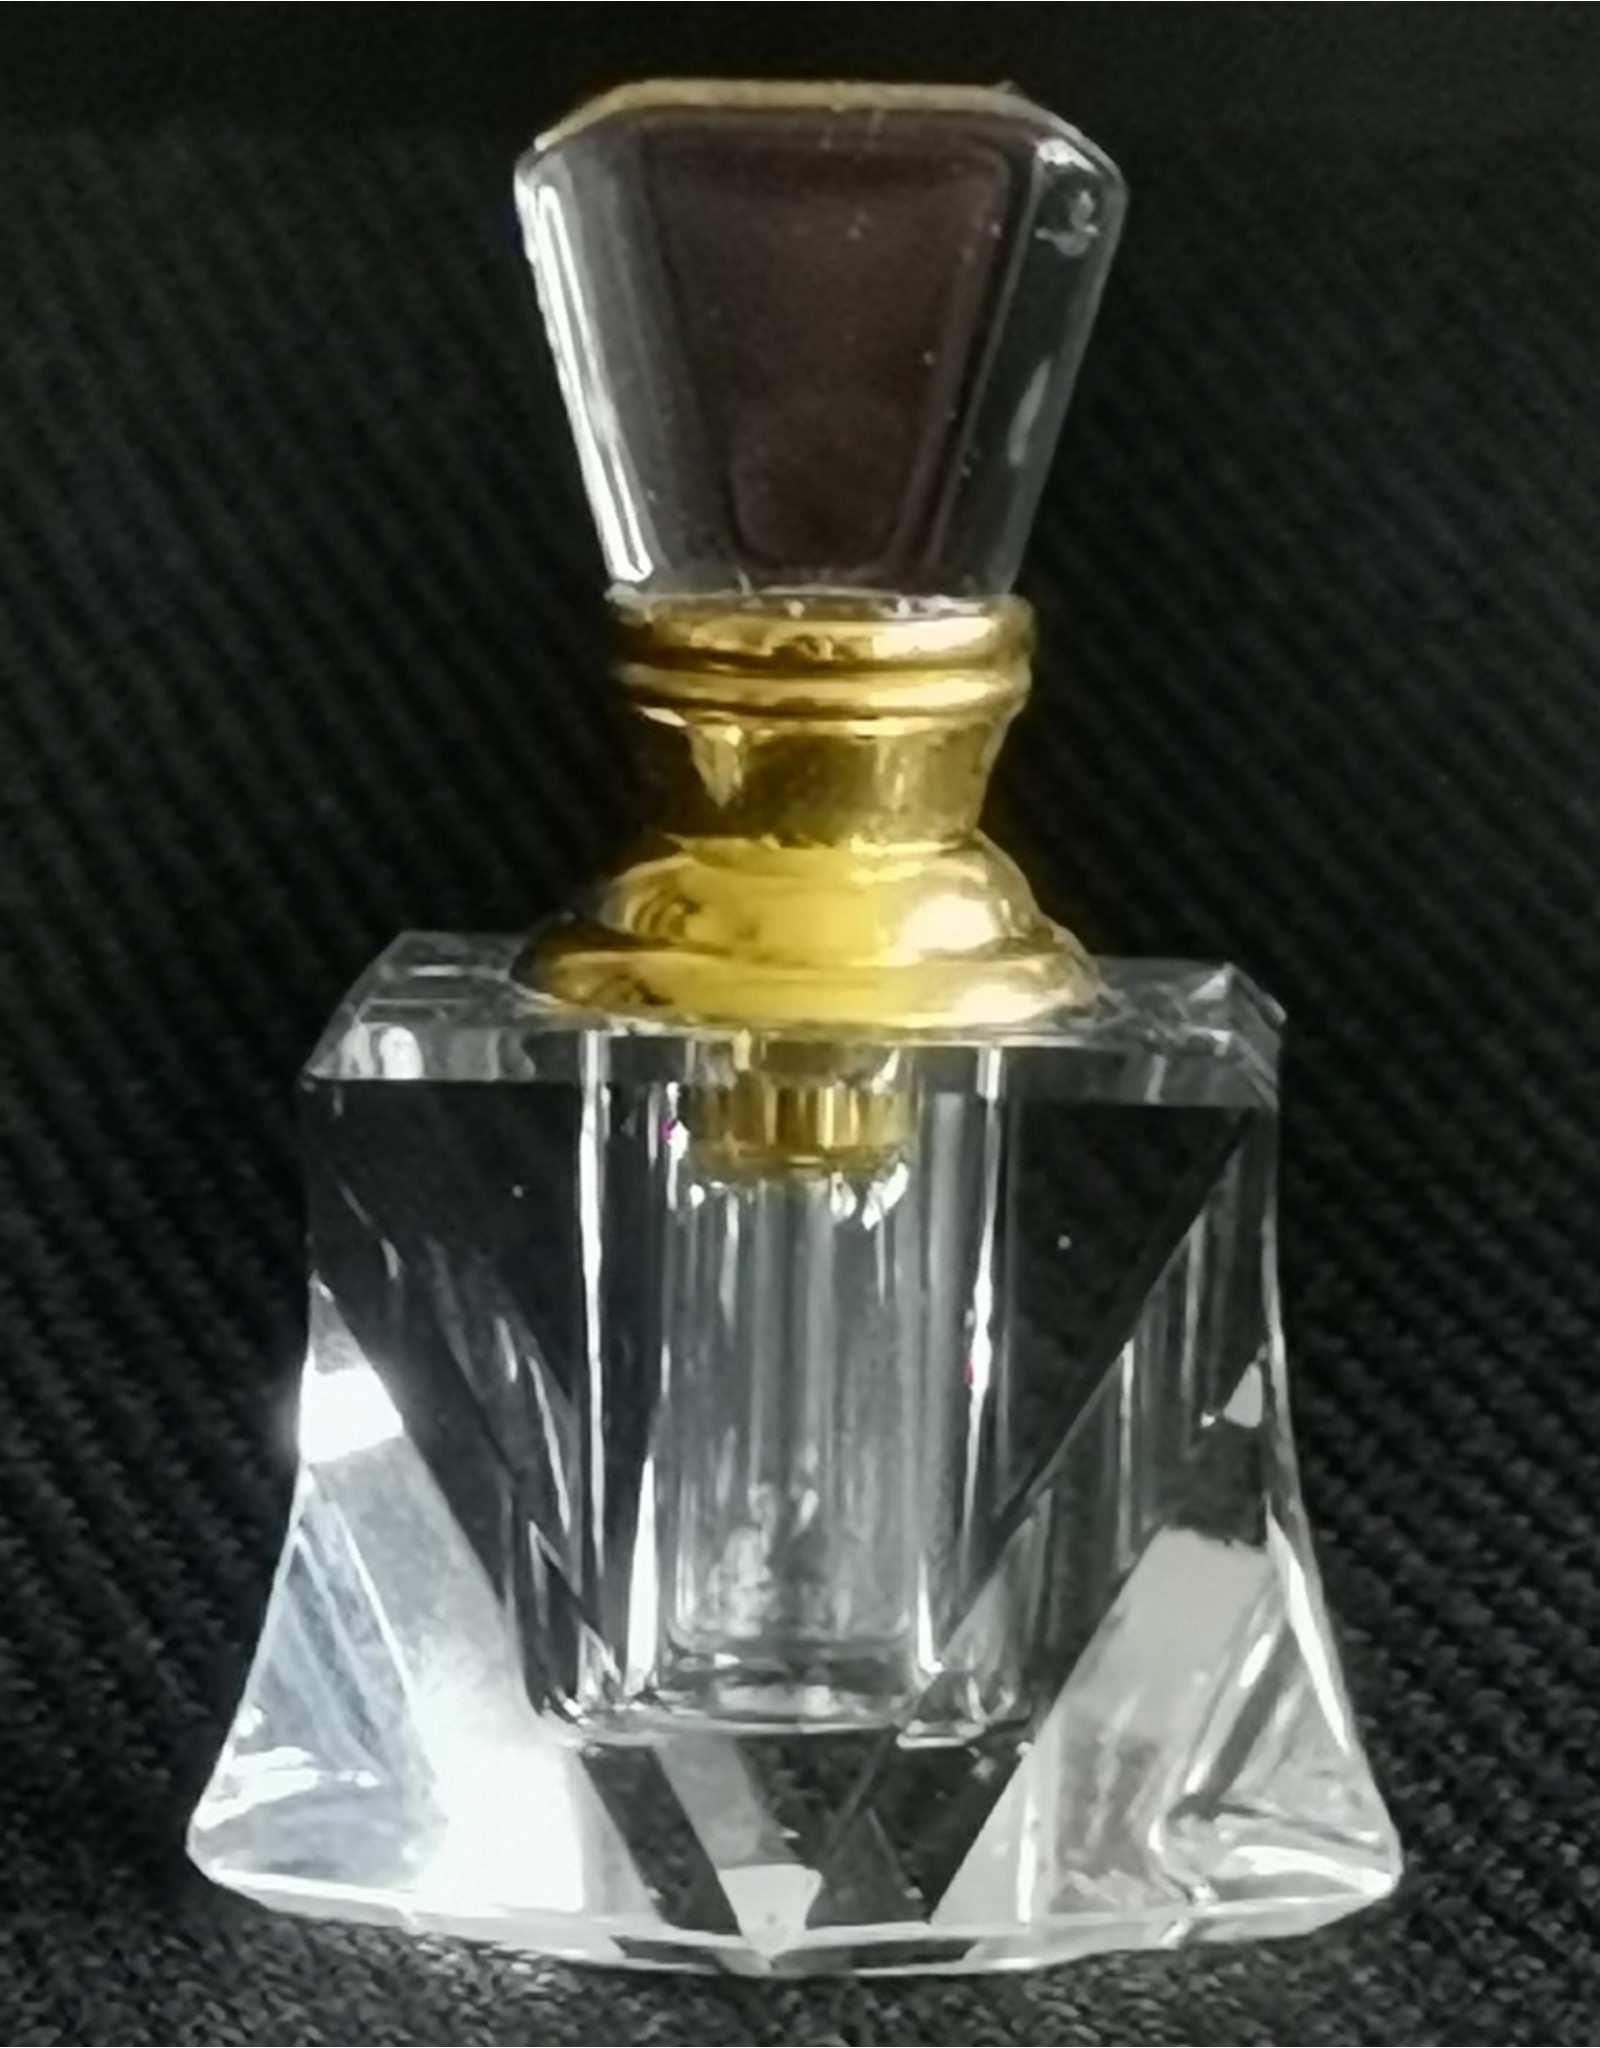 Trukado Miscellaneous - Mini Crystal Perfume Bottle "Pompadour"